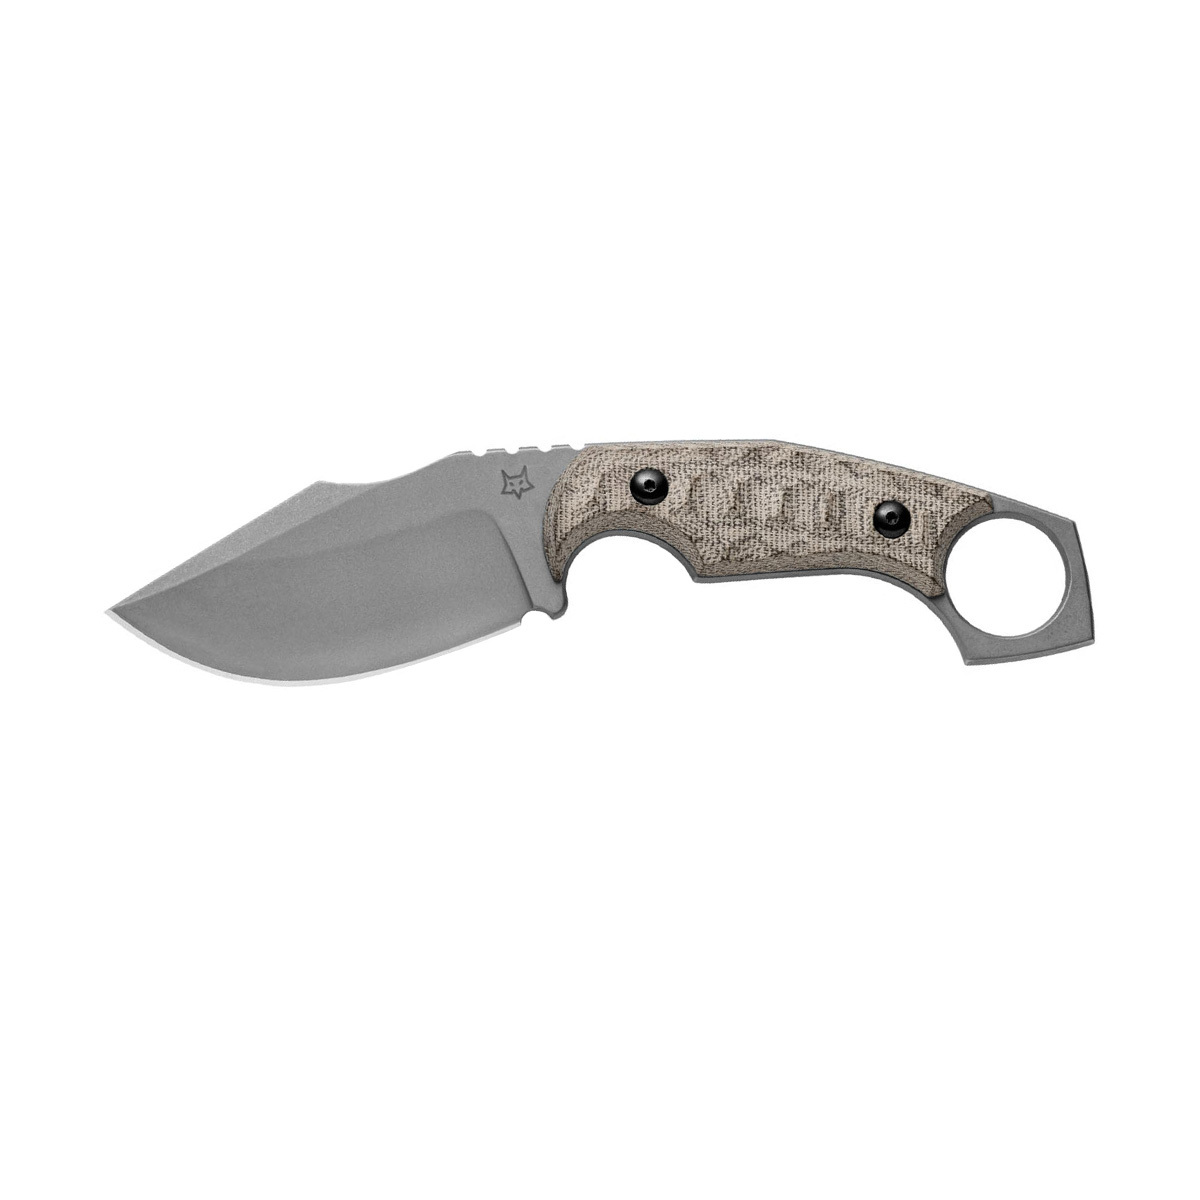 Нож Fox Monkey Thumper FX-633 MOD, сталь niolox, рукоять микарта